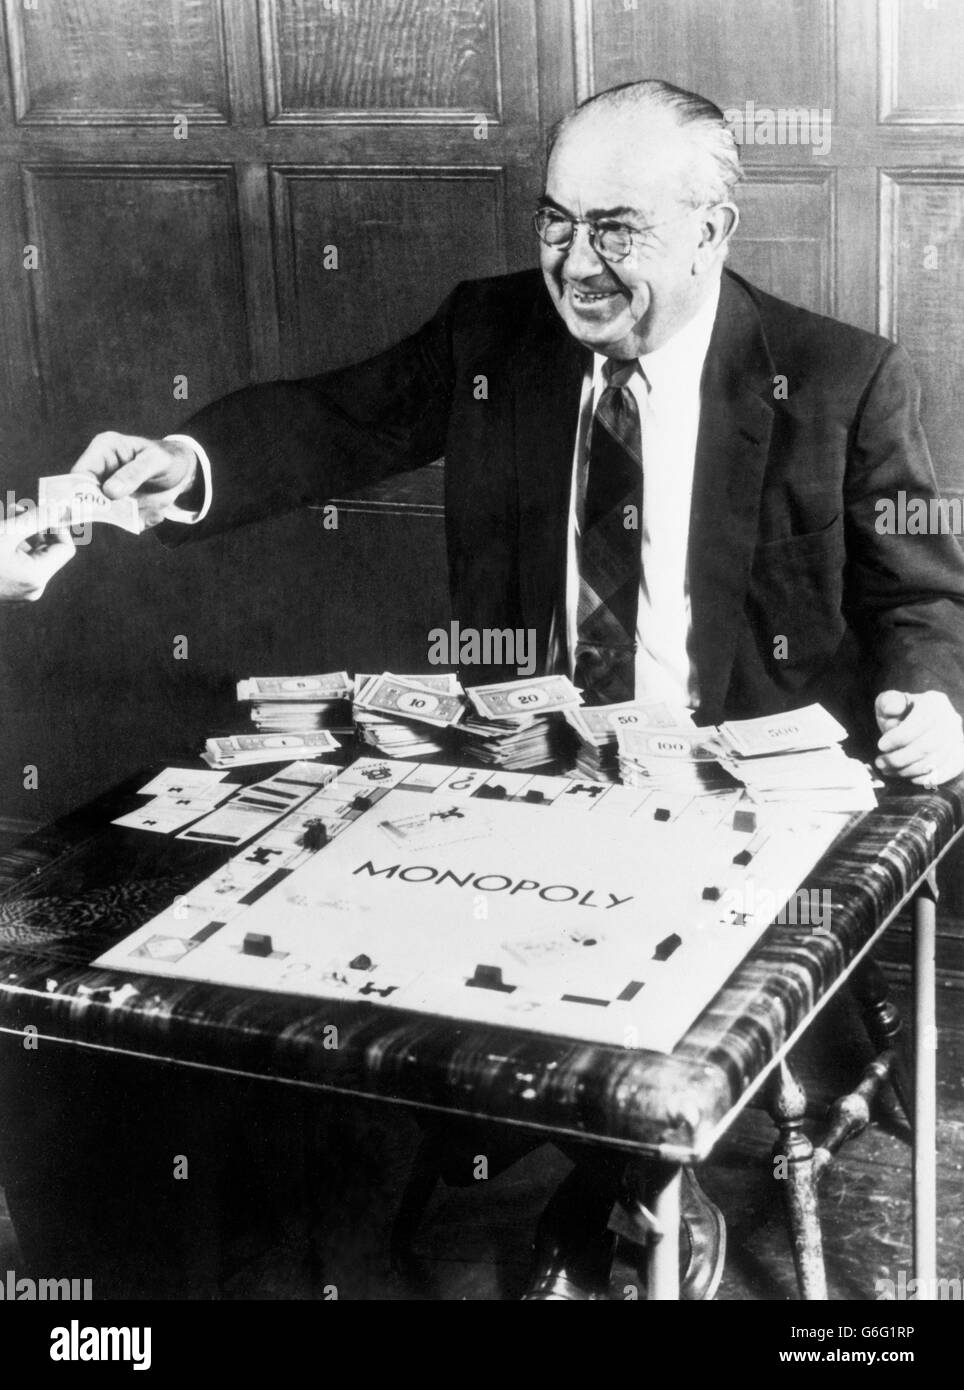 Charles B Darrow, qui a fait fortune en inventant le monopole du jeu quand il était hors de travail pendant la Grande Dépression. Date inconnue. Banque D'Images